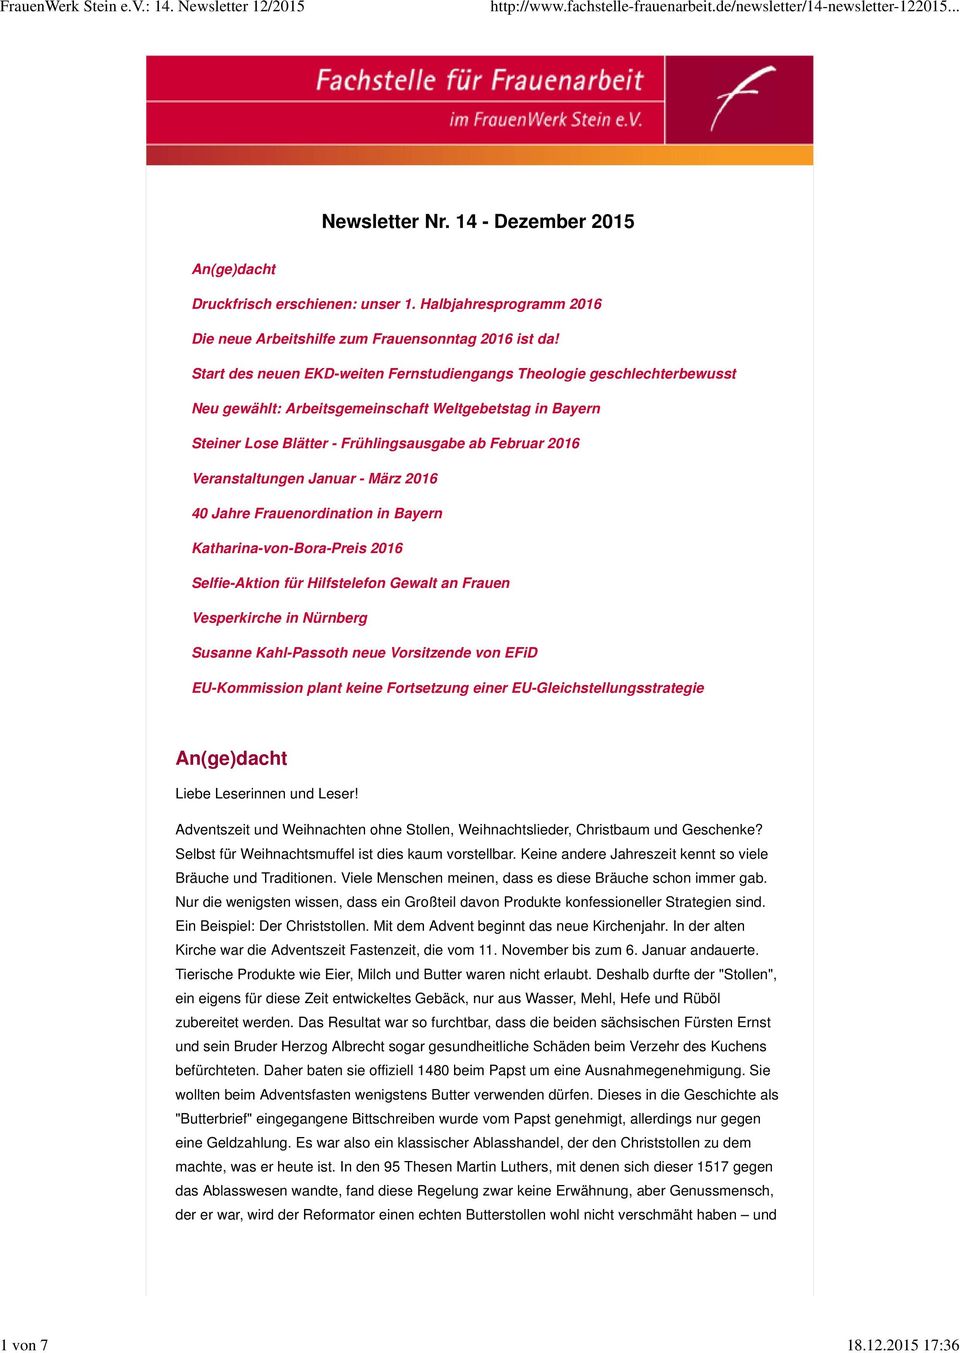 Veranstaltungen Januar - März 2016 40 Jahre Frauenordination in Bayern Katharina-von-Bora-Preis 2016 Selfie-Aktion für Hilfstelefon Gewalt an Frauen Vesperkirche in Nürnberg Susanne Kahl-Passoth neue